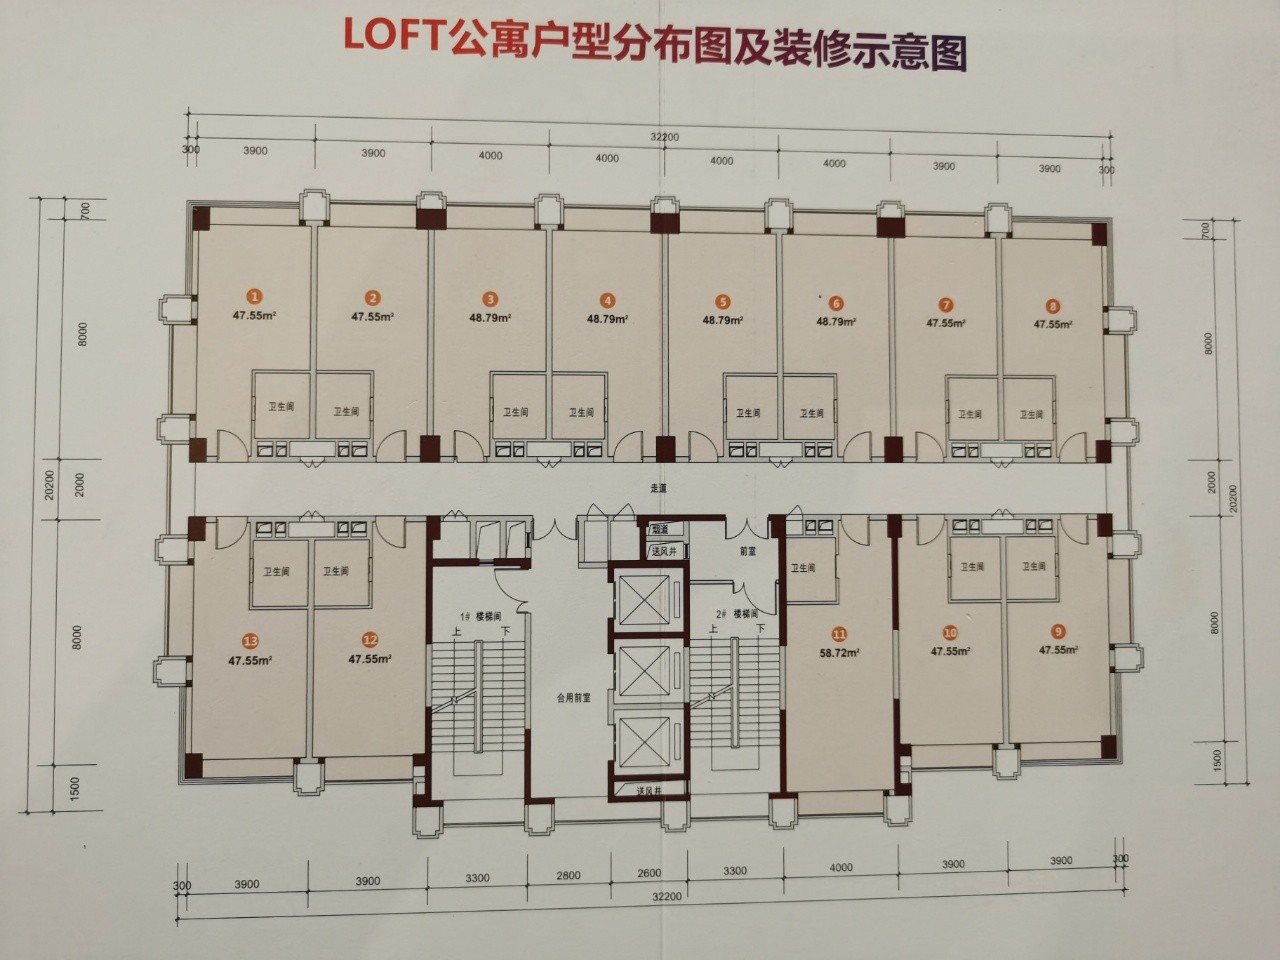 LOFT公寓平面图